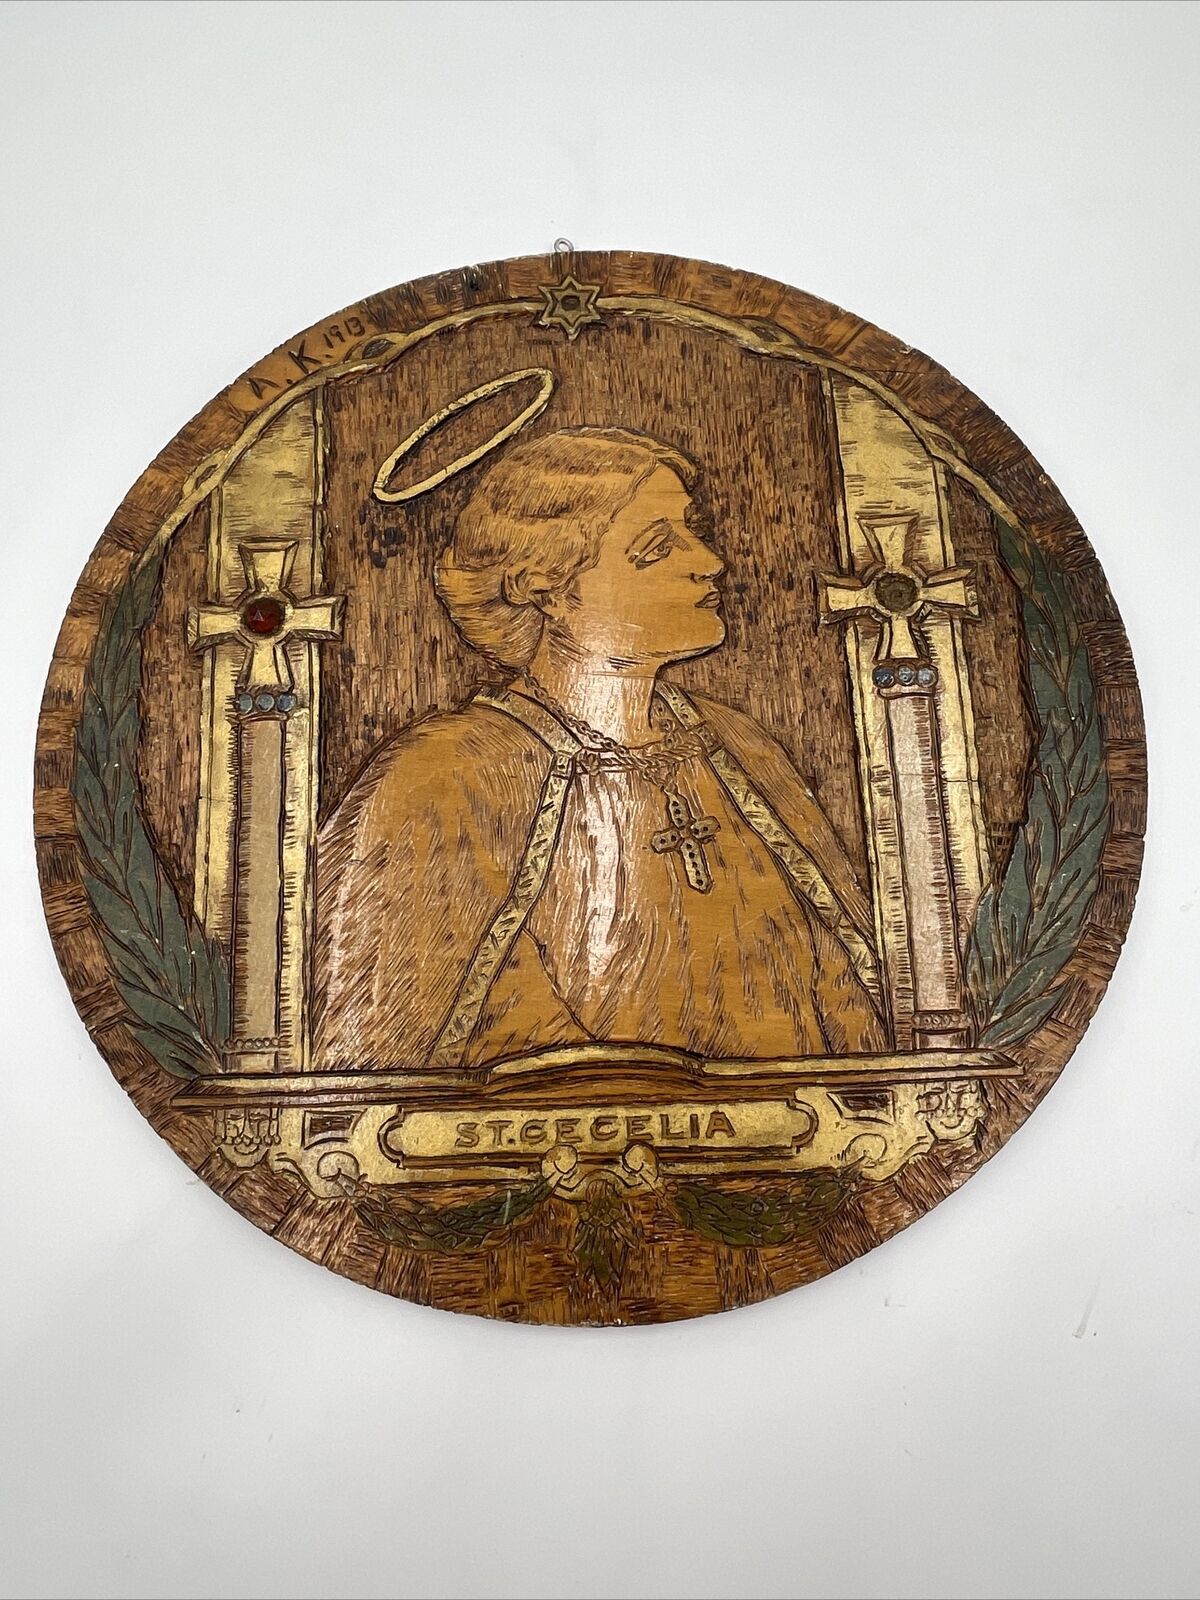 Antique Pyrography Flemish Art Co. 1913 St. Cecelia Catholic Orthodox Stamped